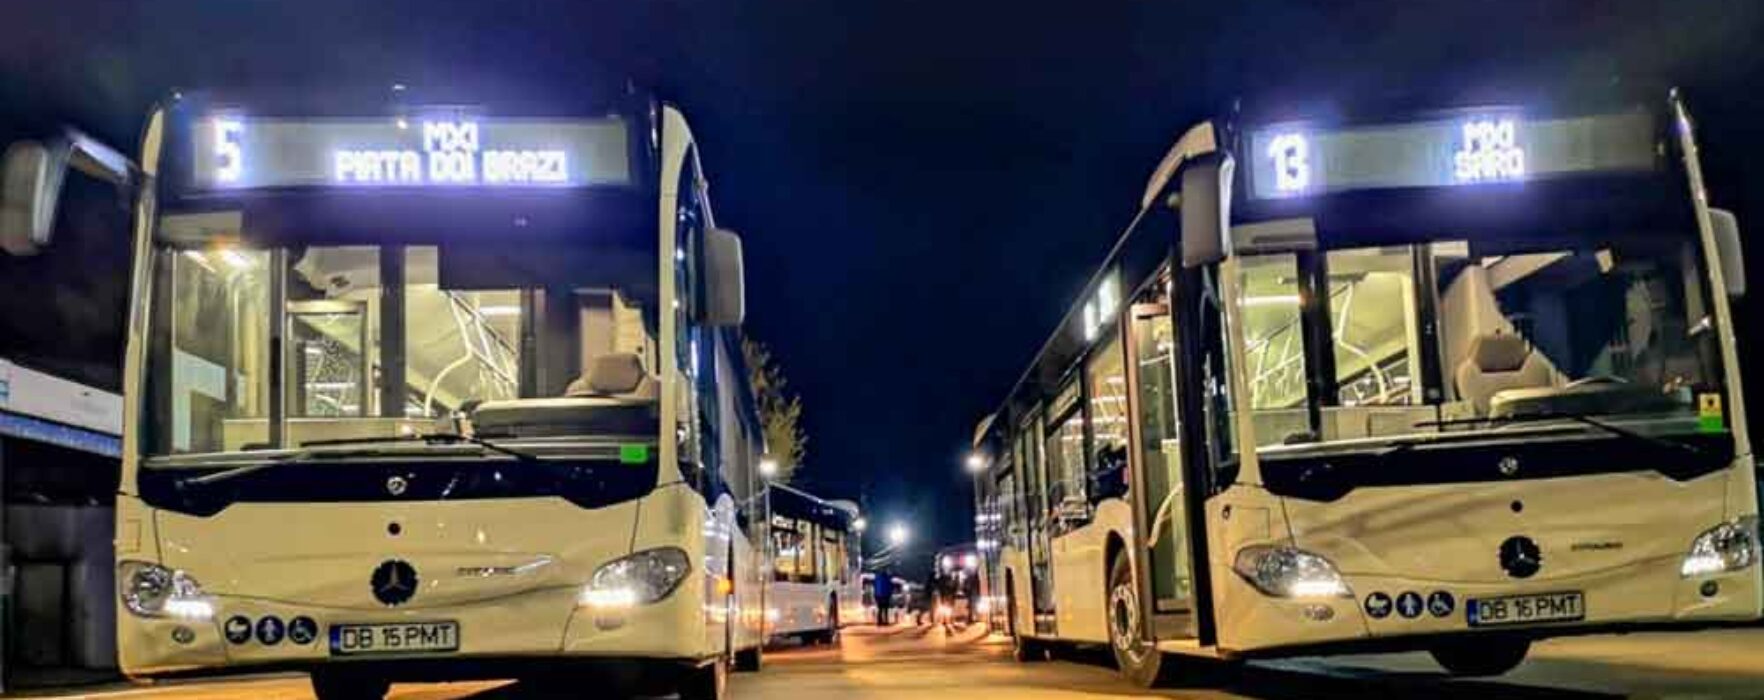 “Soluții ITS pentru transportul urban la nivelul Municipiului Târgoviște”